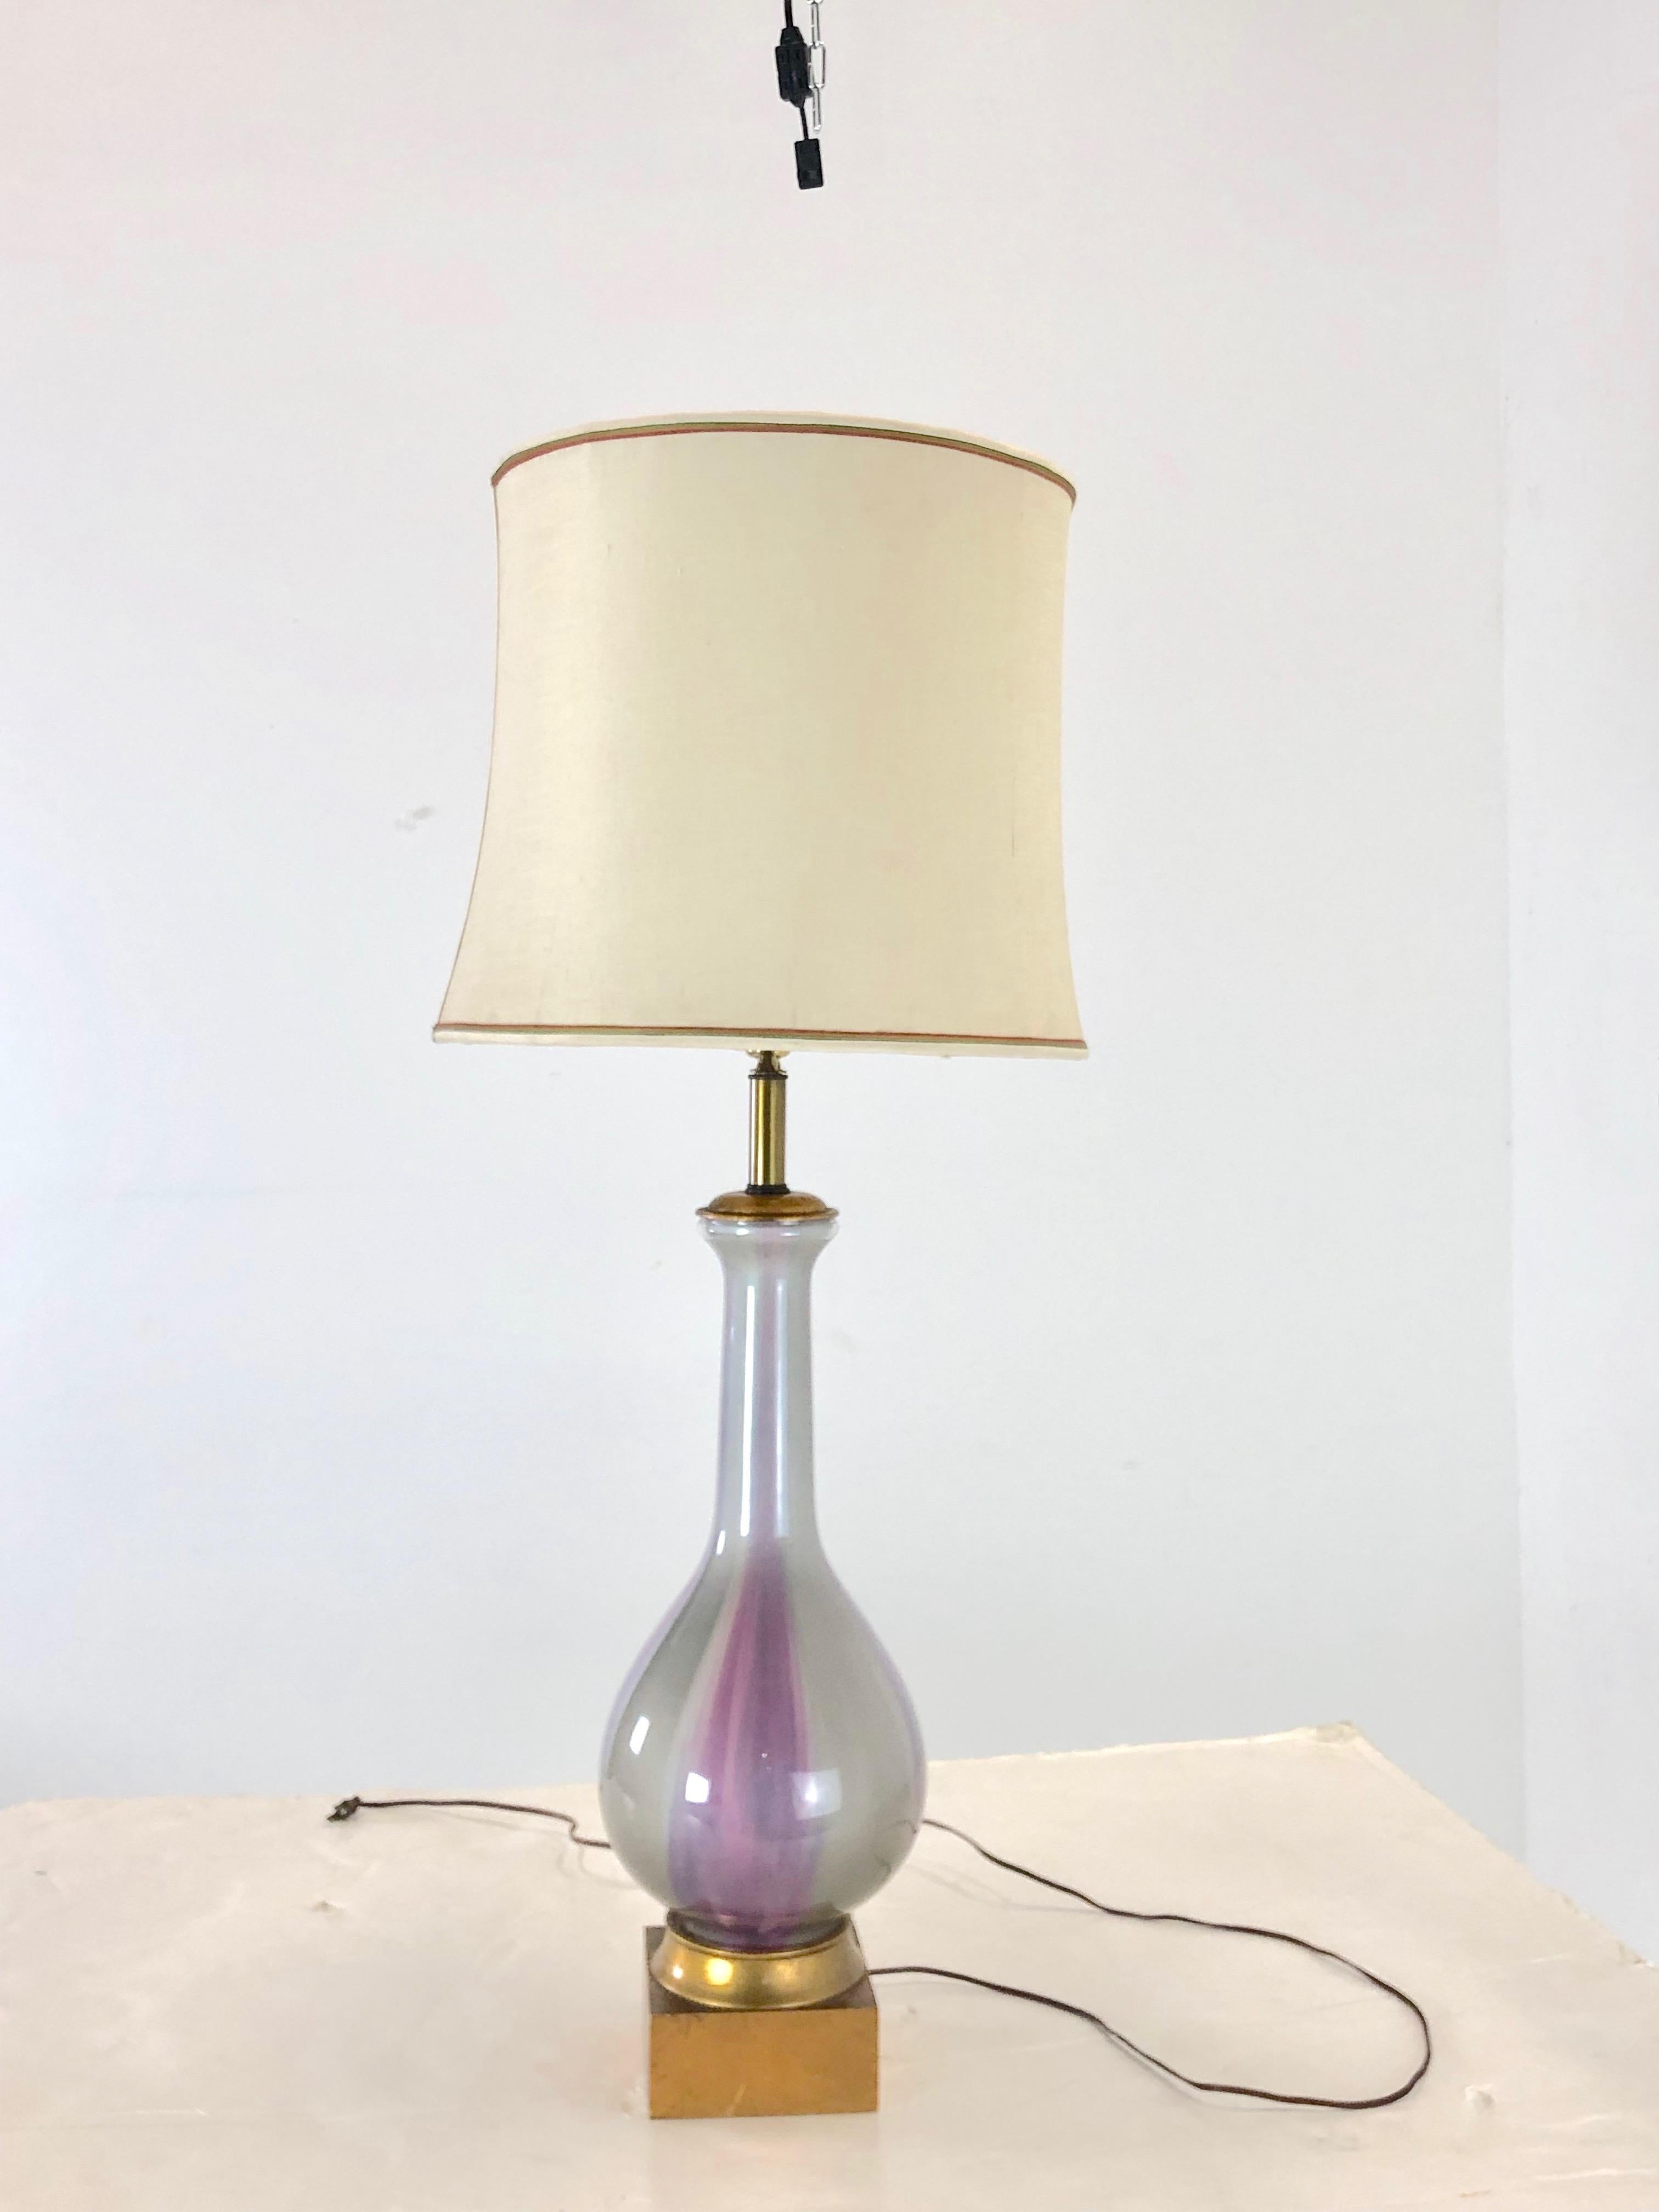 Lampe iridescente de Frederick Cooper. La lampe est en bon état vintage avec le câblage d'origine, vers les années 1960.

Abat-jour non inclus.

Dimensions :
9 L × 9 P × 30 T (haut de la douille) 44 T (haut de la harpe).